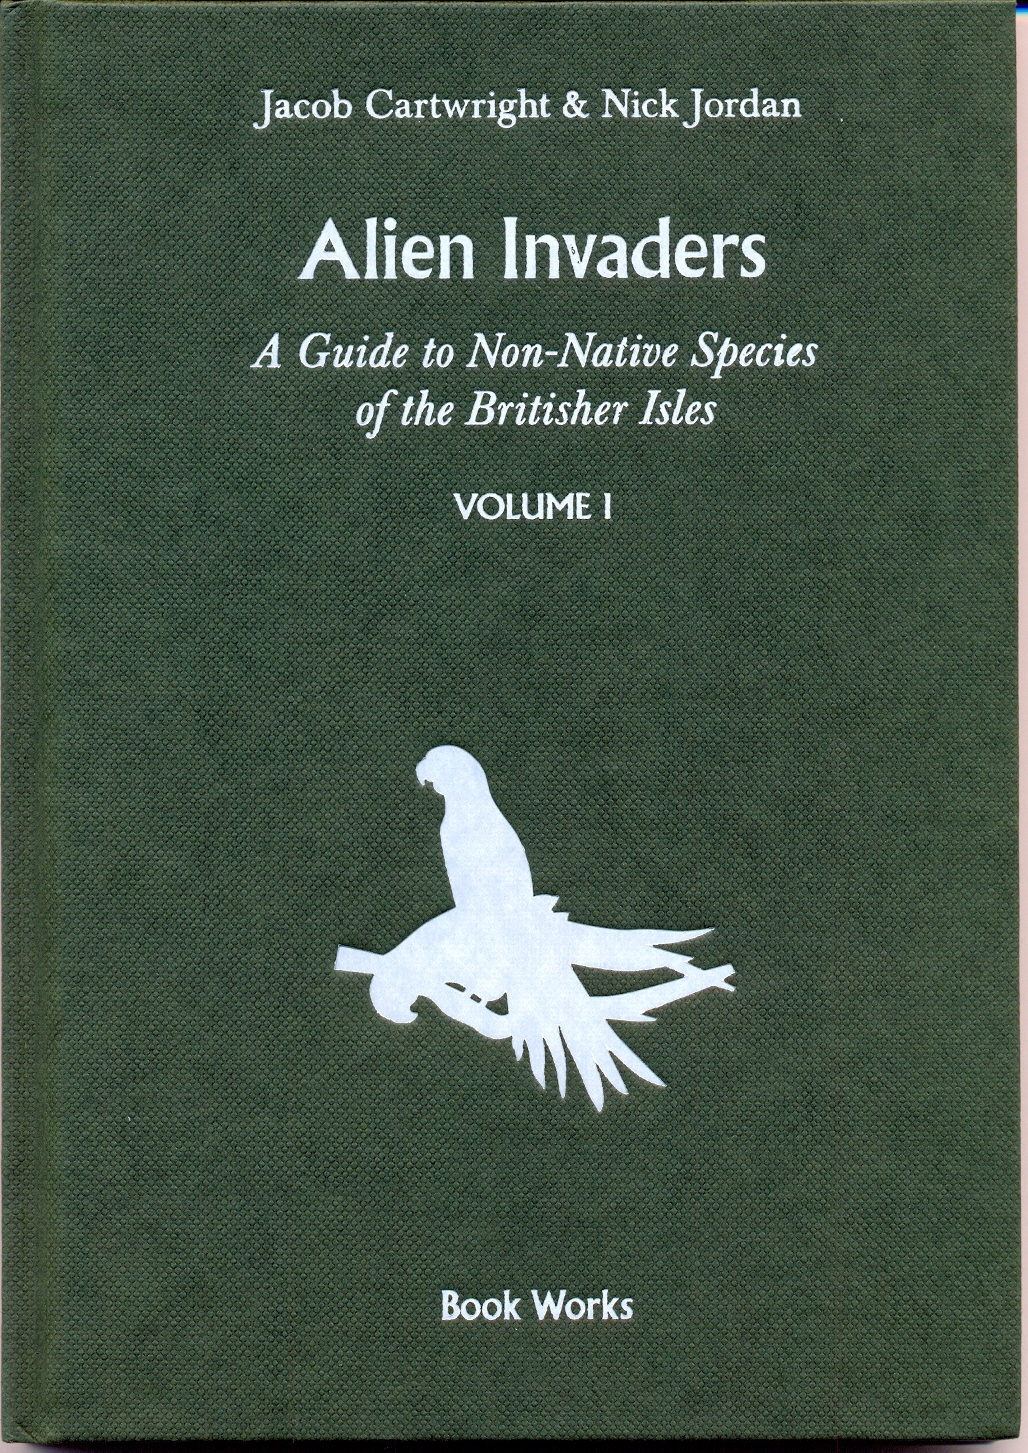 Alien invaders